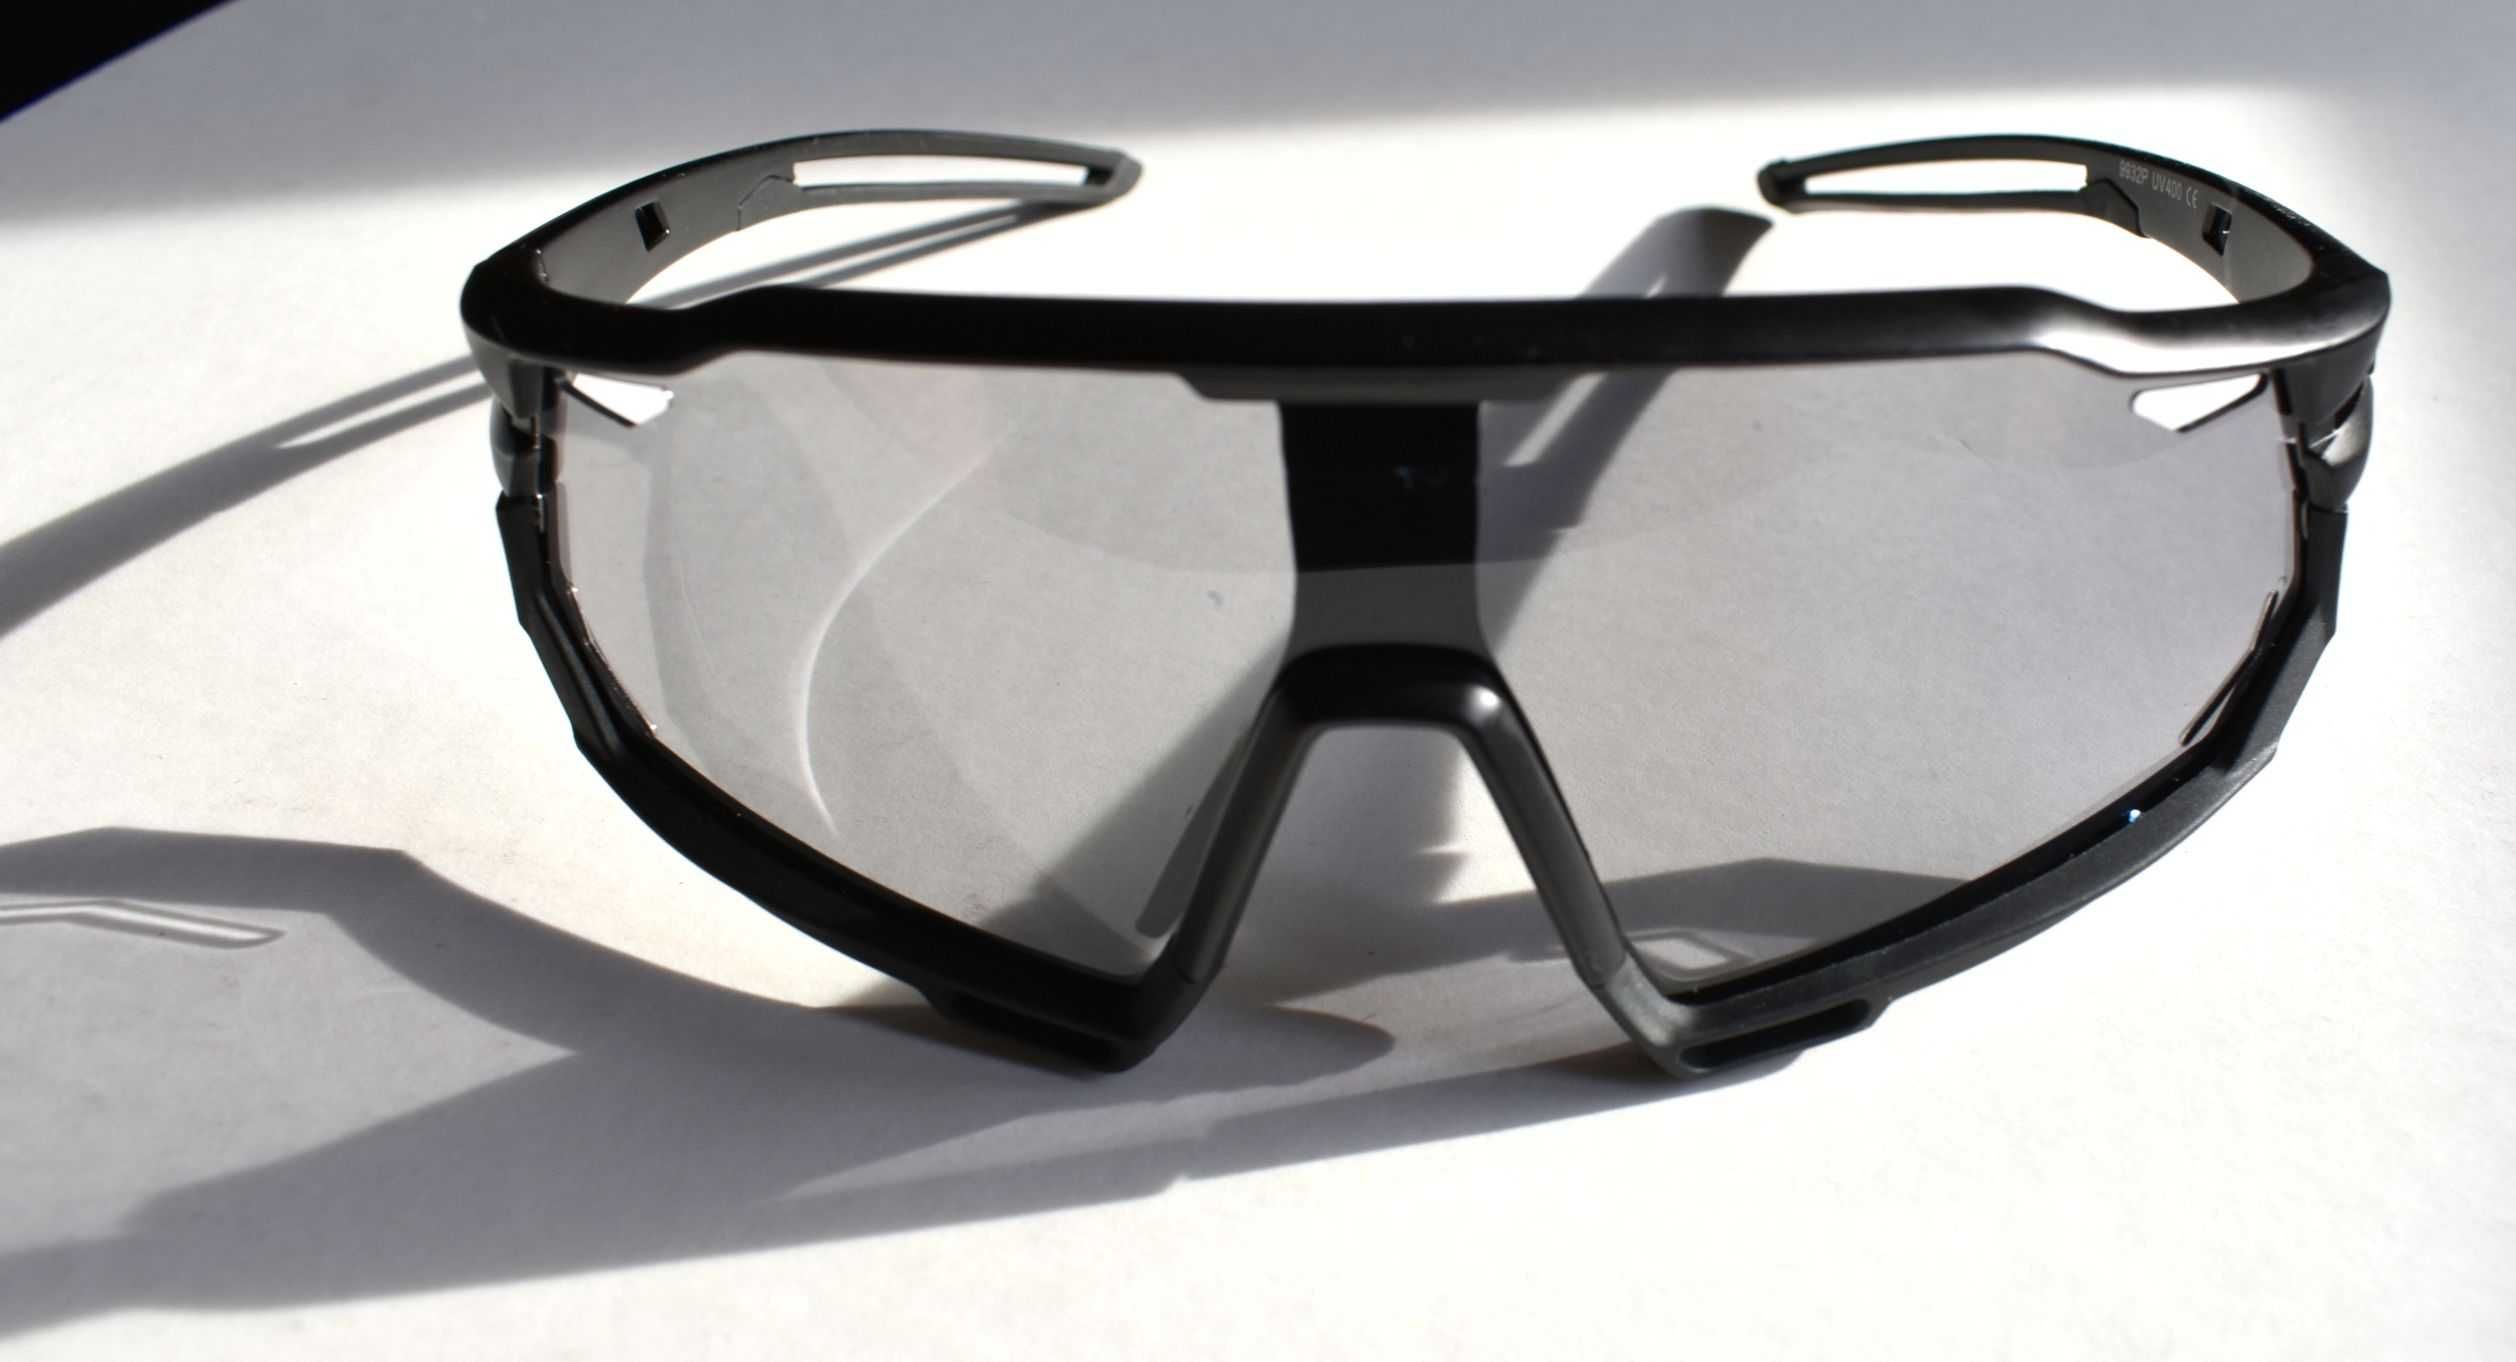 Okulary sportowe, rowerowe, fotochrom UV400 bezbarwne, CE